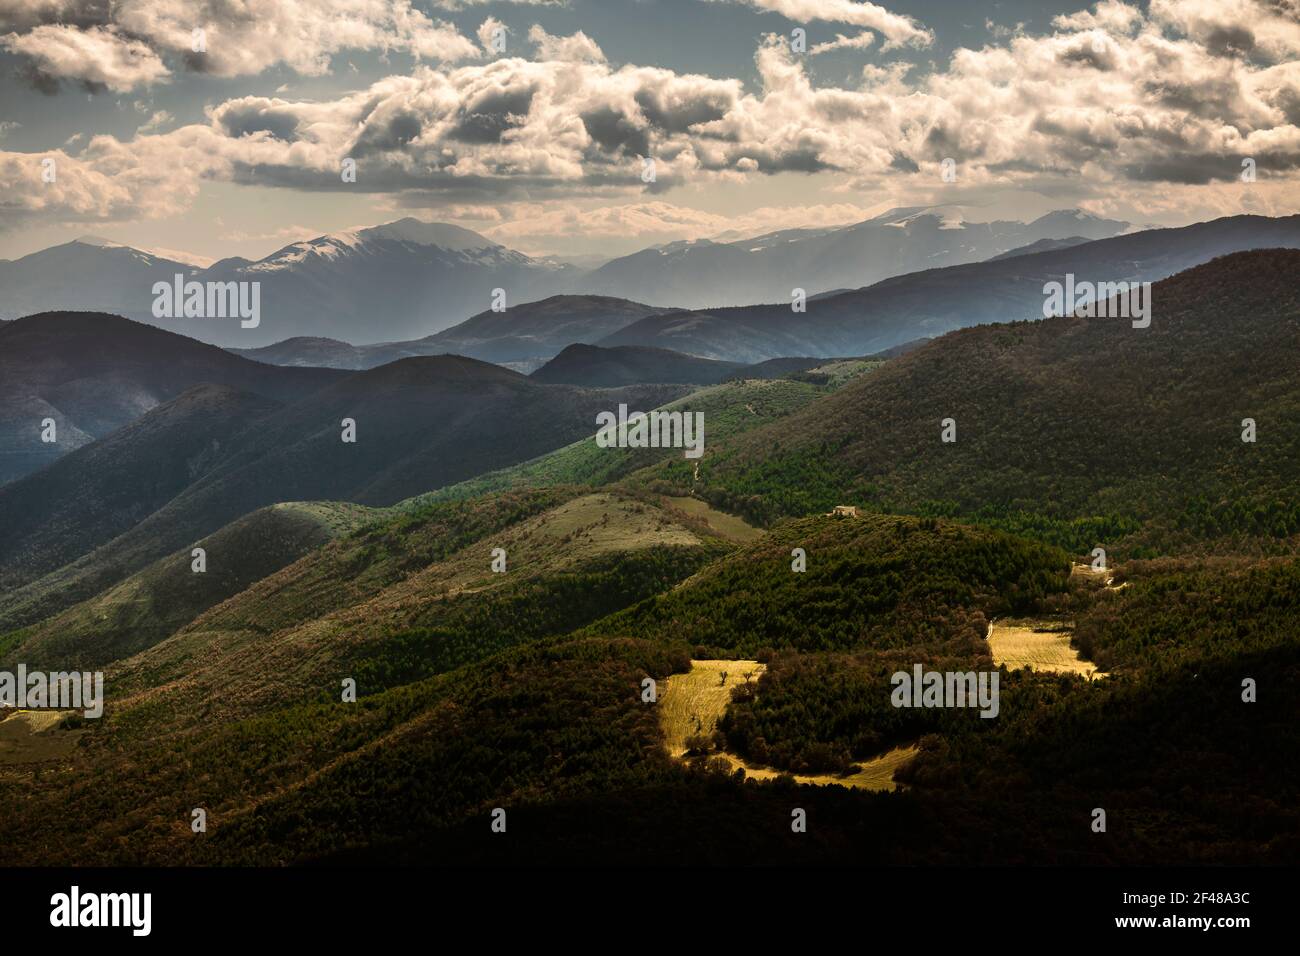 Natürliche Landschaft der Abruzzen Berge, Hügel und Weizenfelder und schneebedeckten Gipfeln. Abruzzen, Italien, Europa Stockfoto